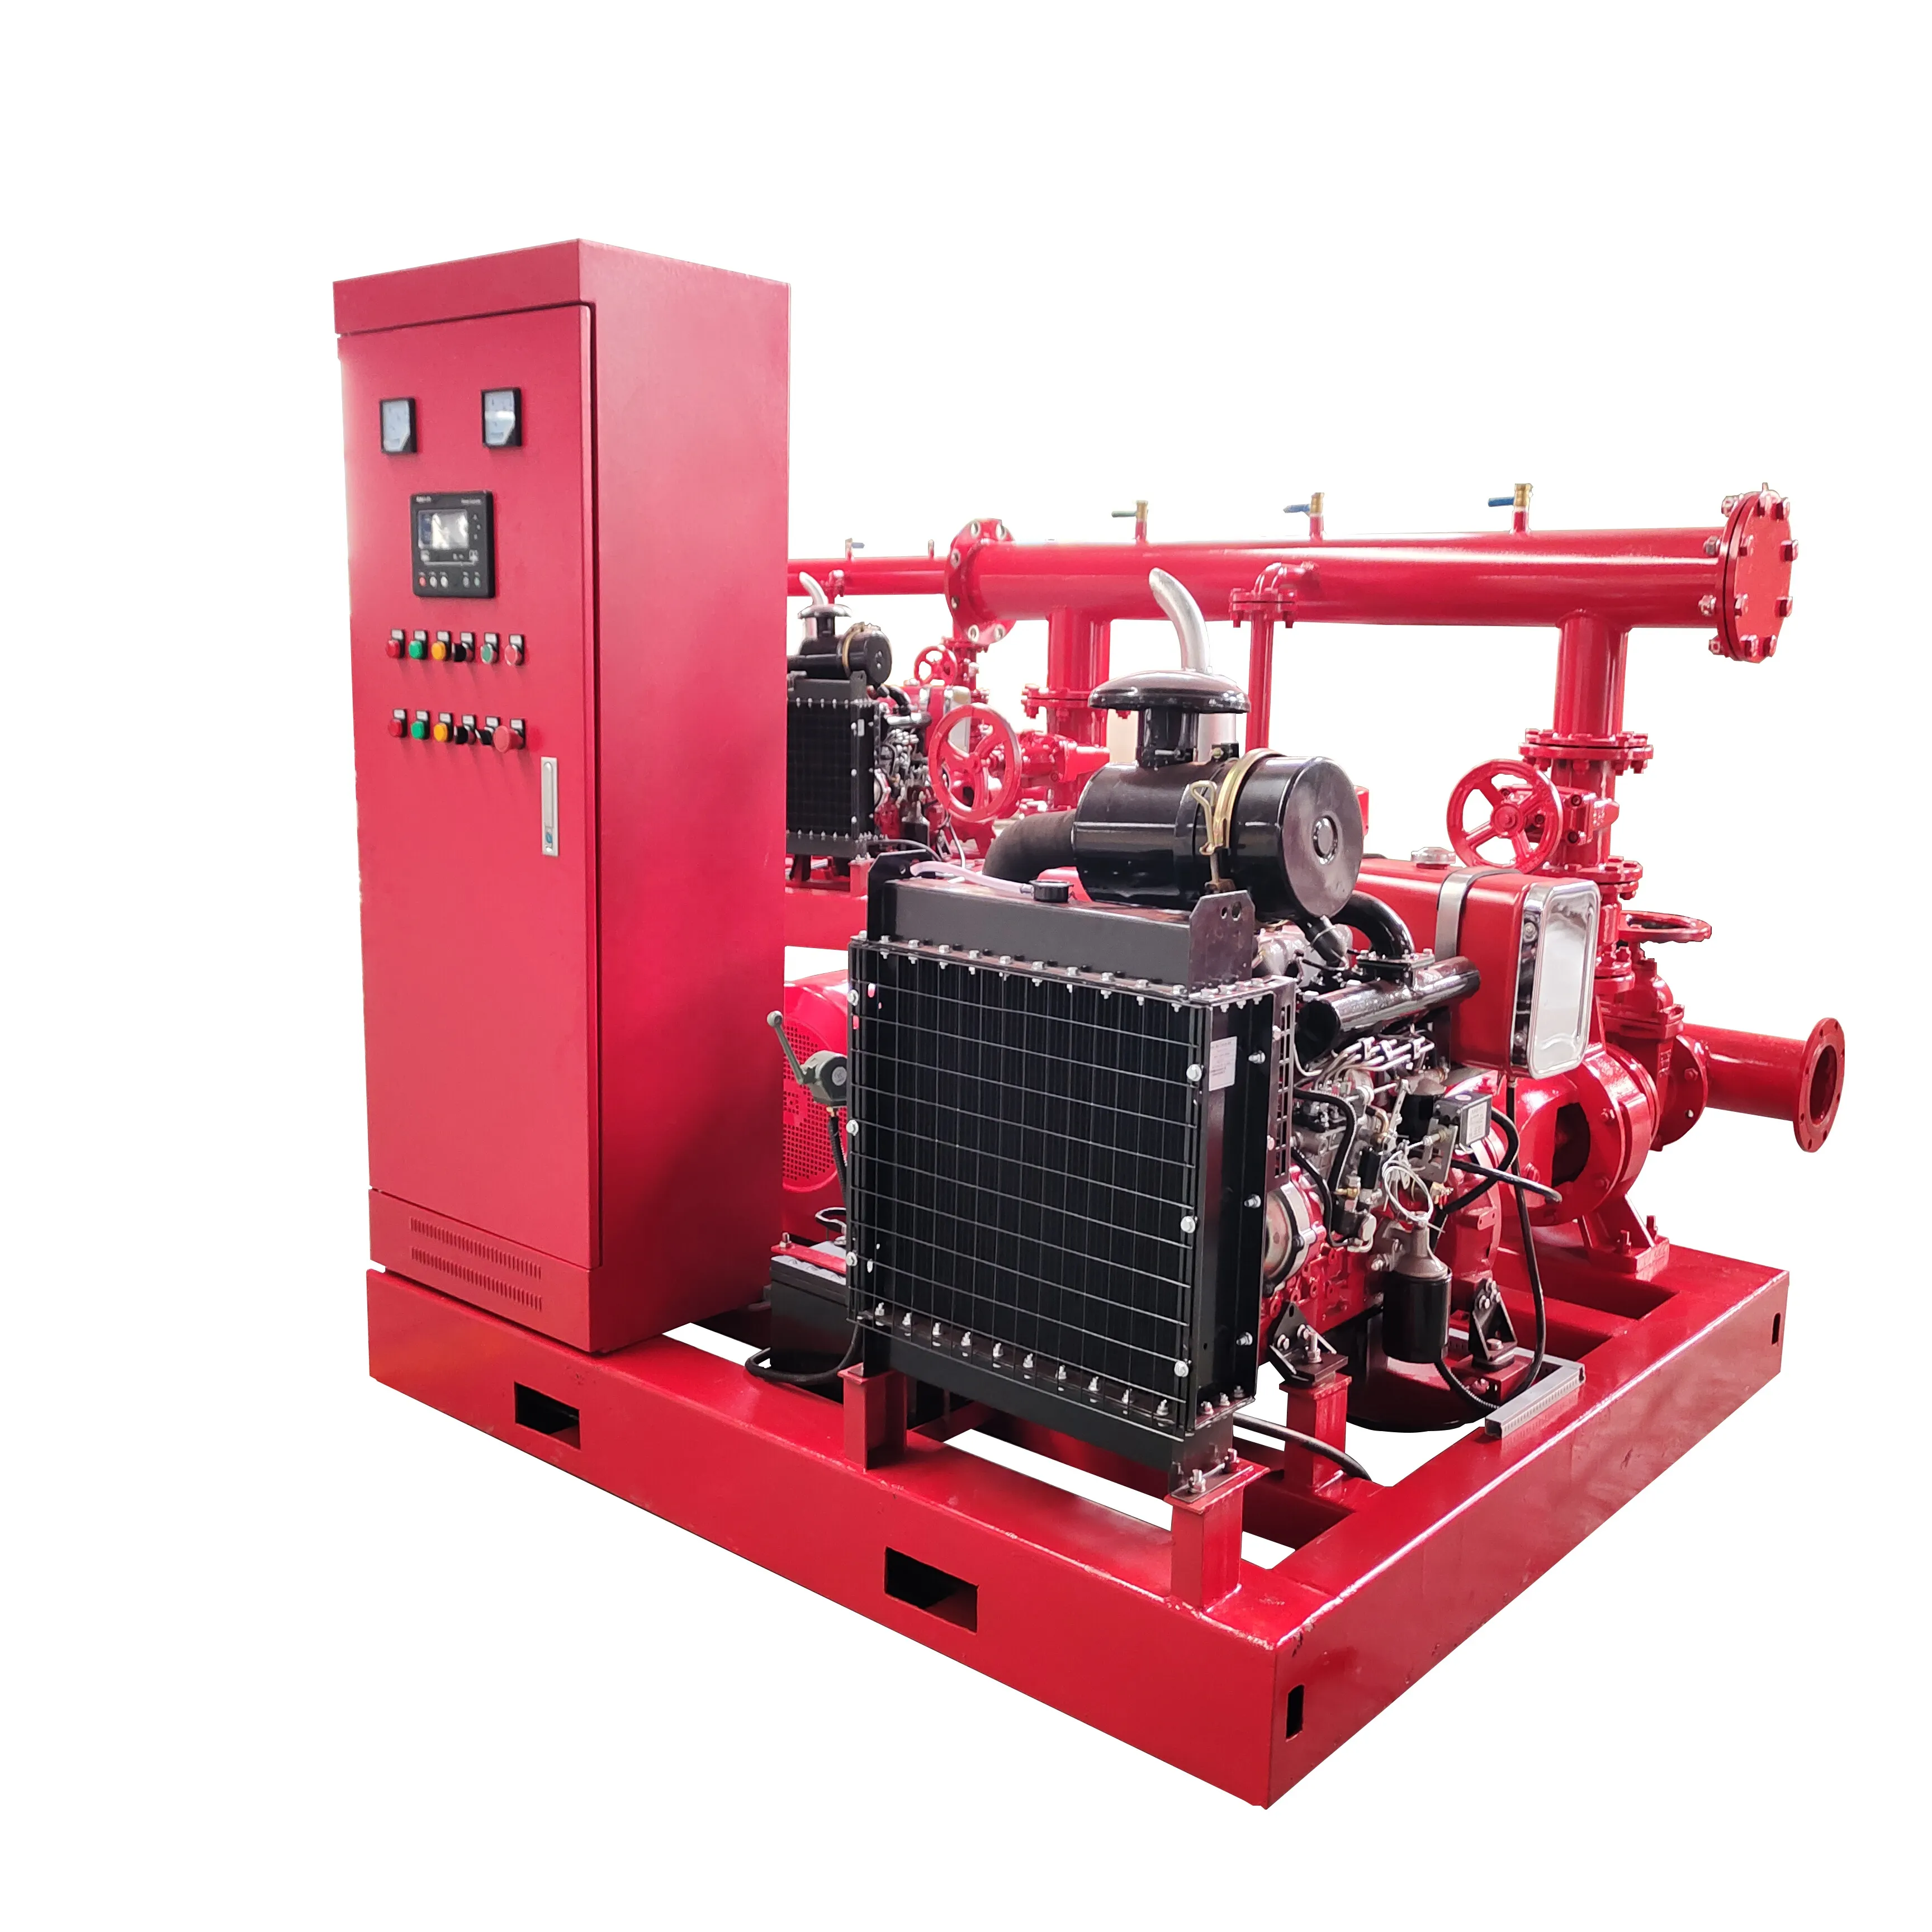 Пожарный насос набор D + E + J три системы 500gpm и общее двойное оборудование для подачи воды дизельный двигатель пожарный водяной насос